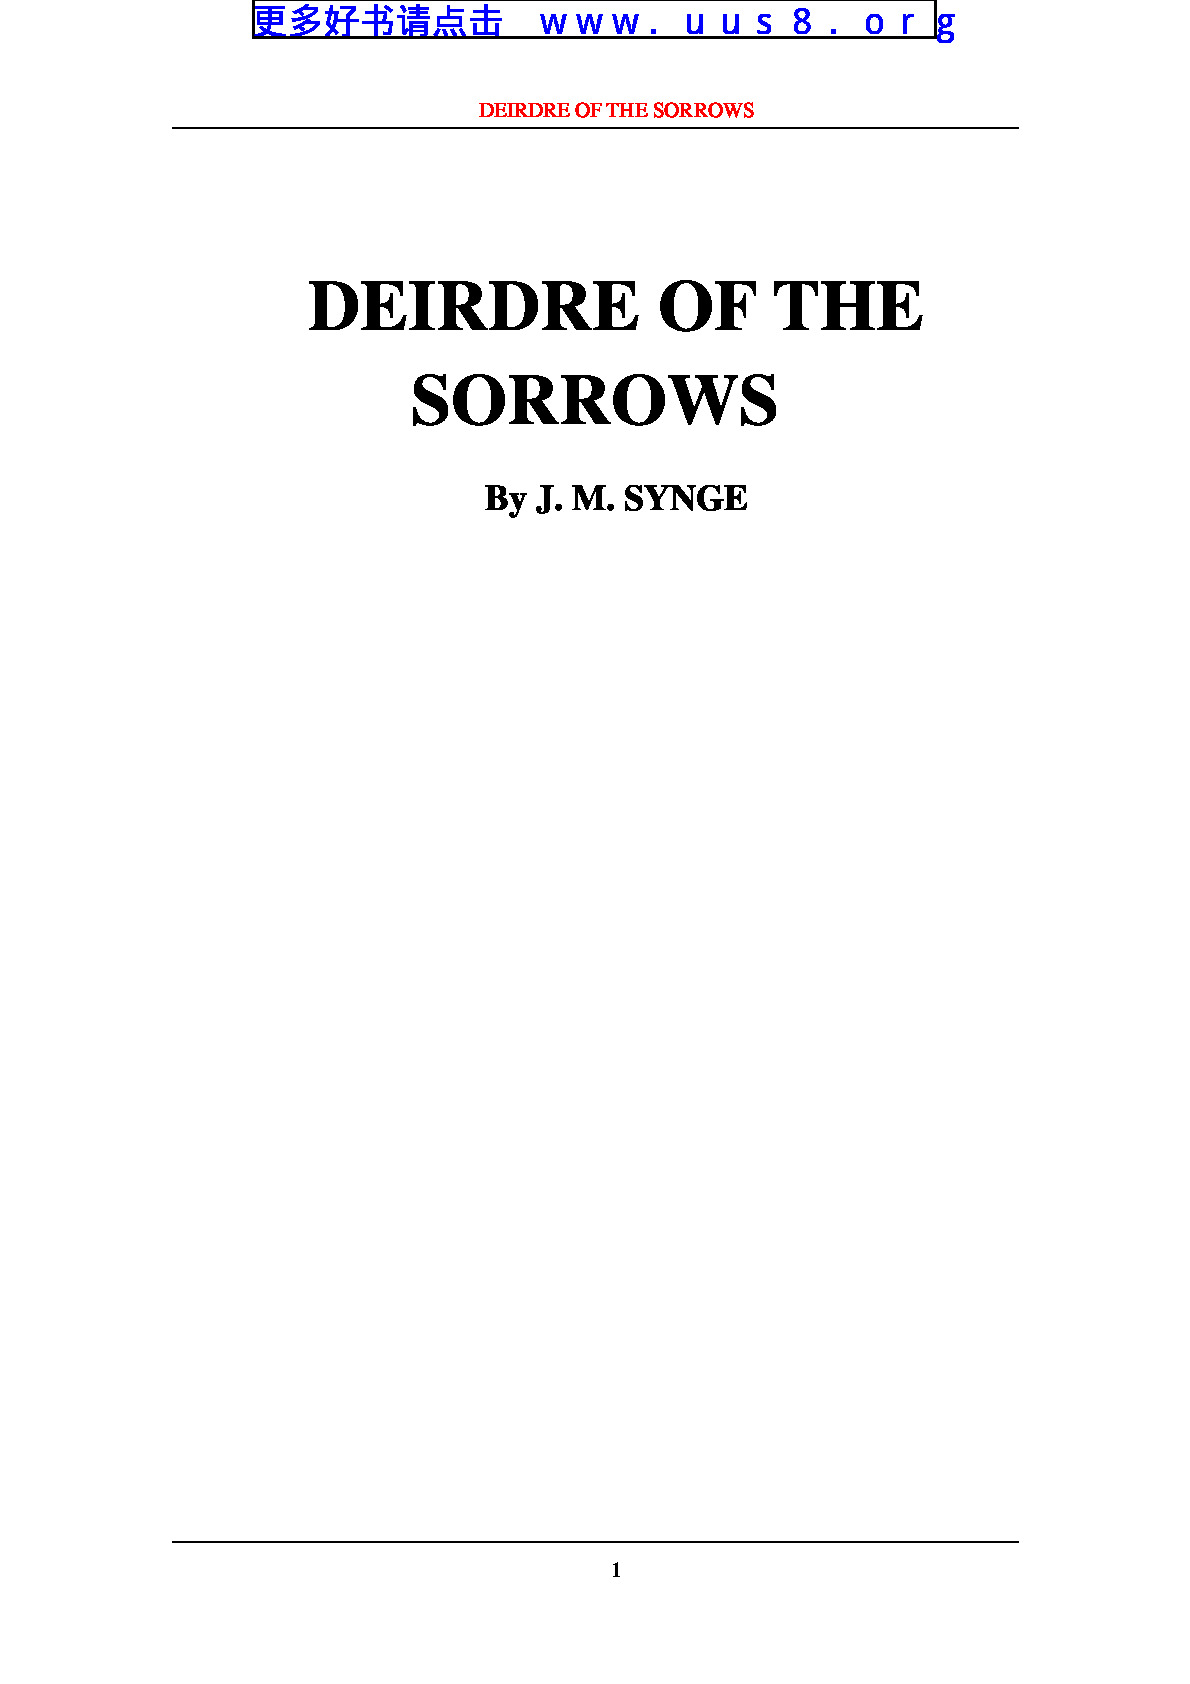 DEIRDRE_OF_THE_SORROWS(悲伤的戴德尔)